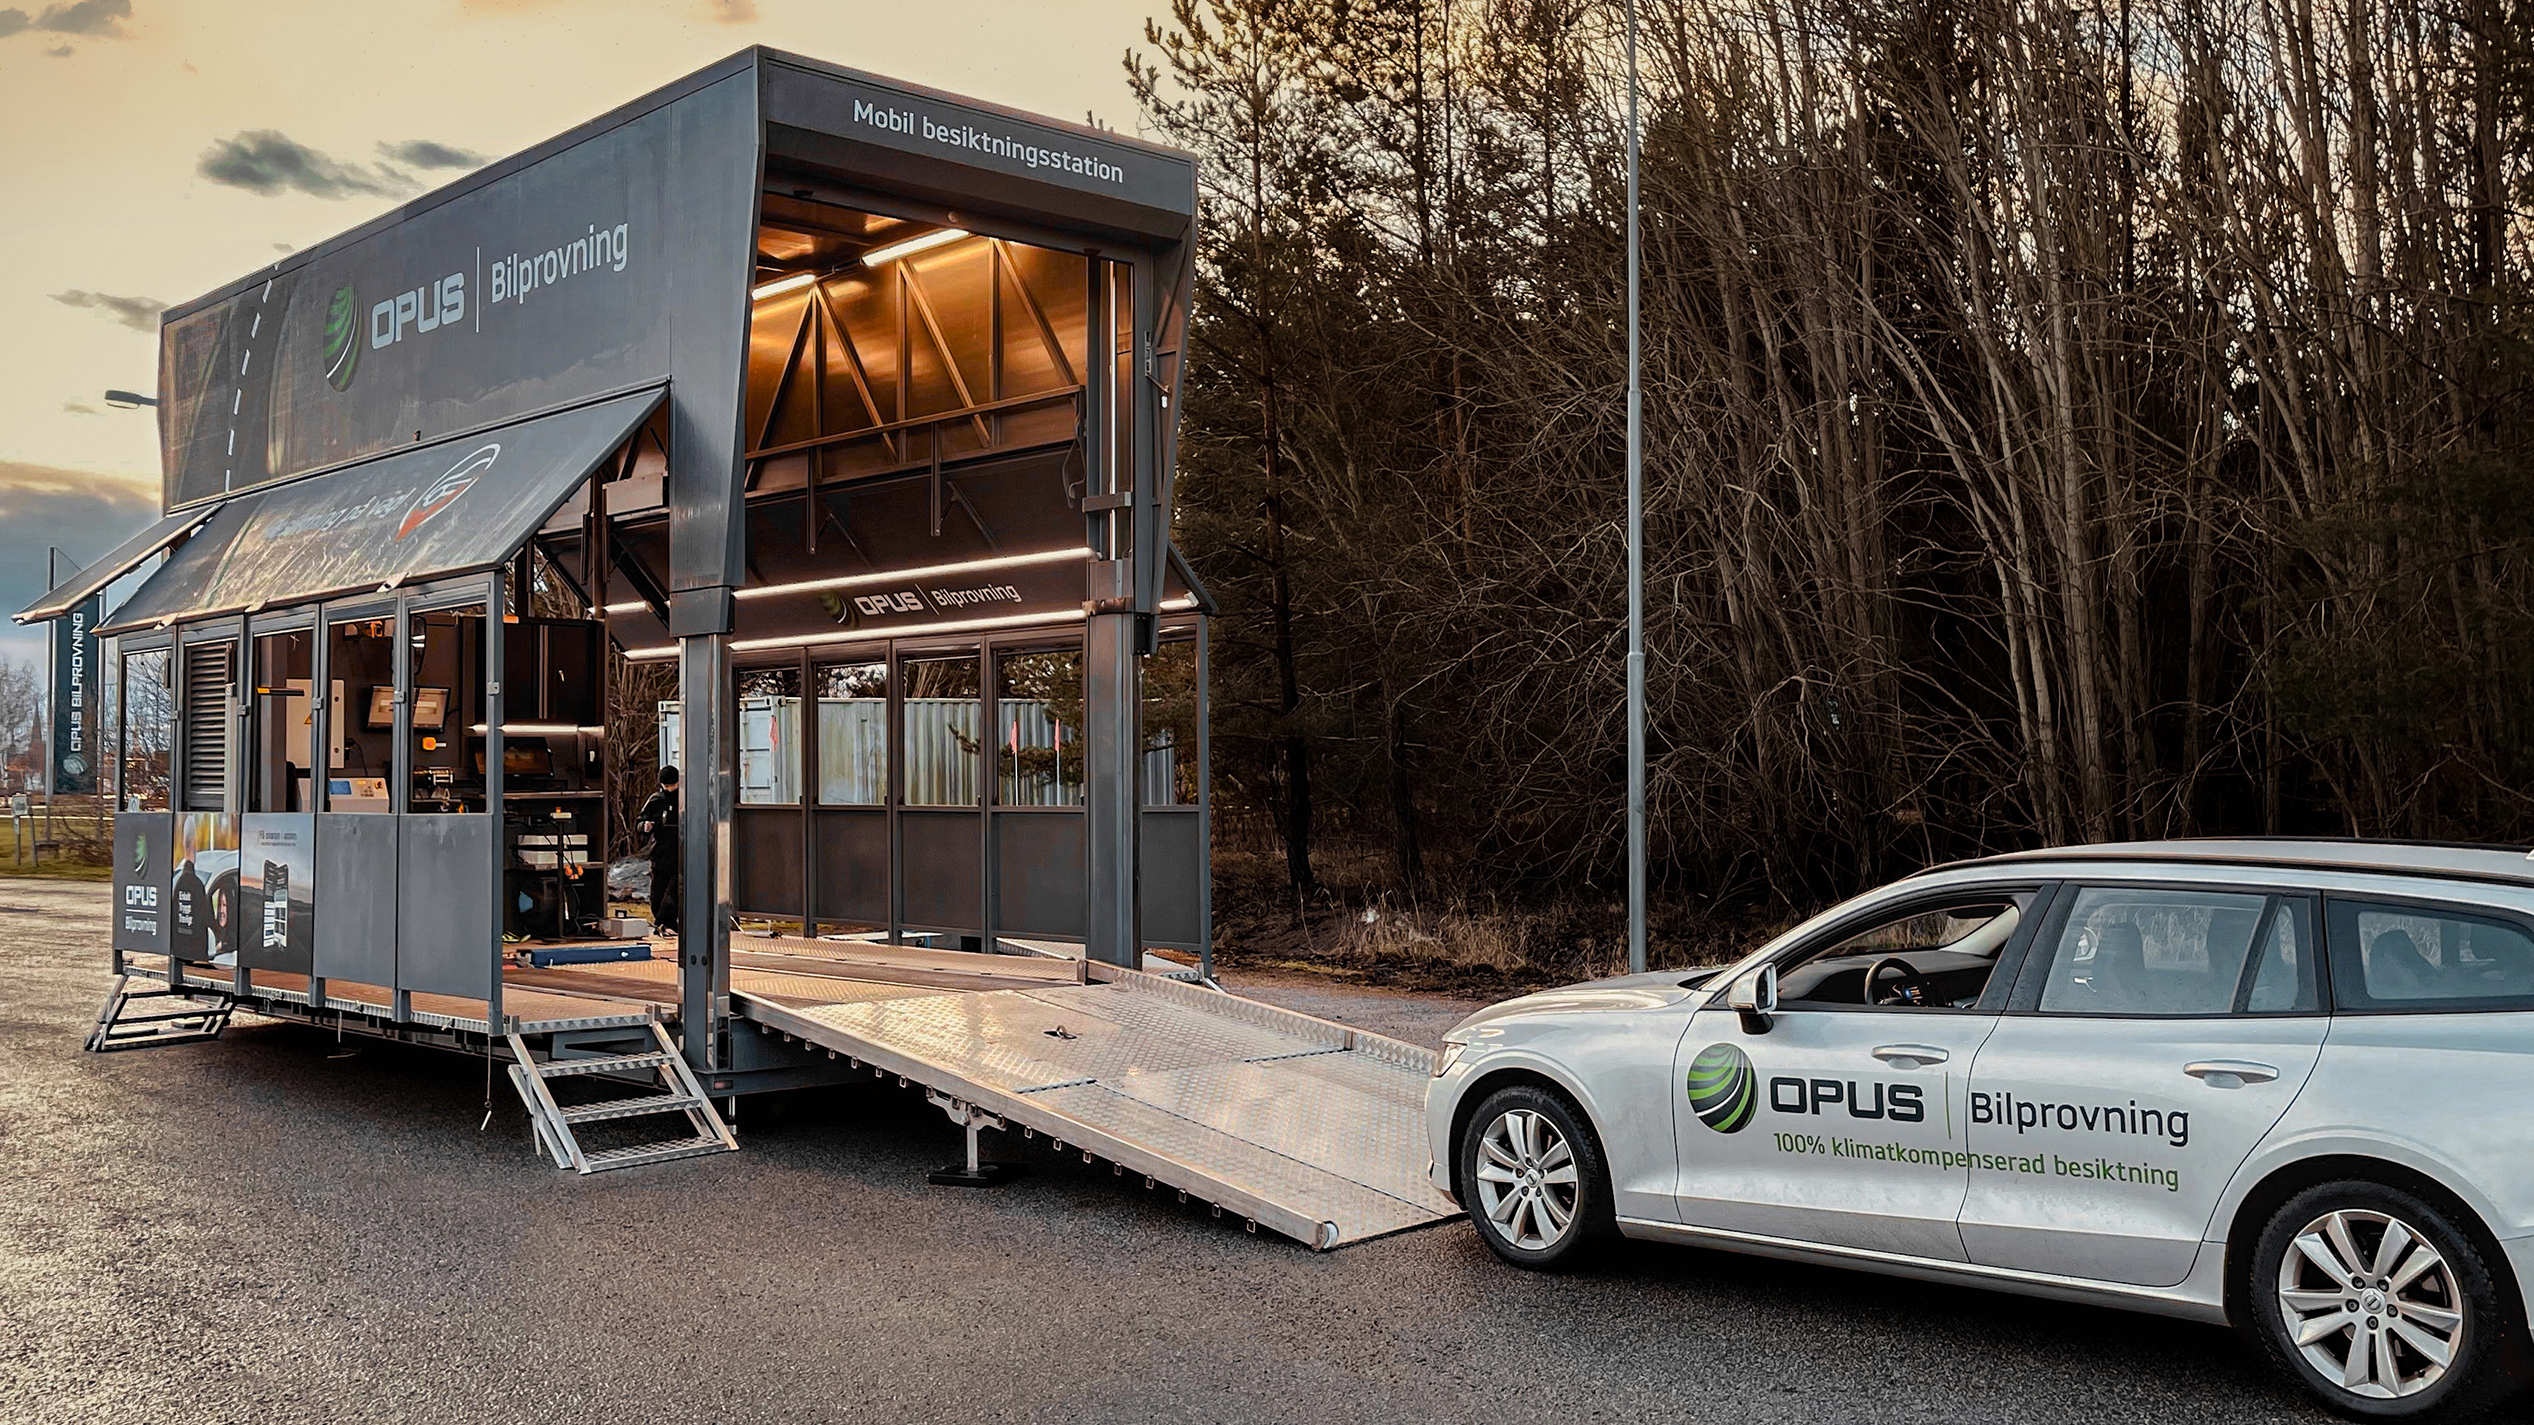 Opus Bilprovnings mobila besiktningsstation.